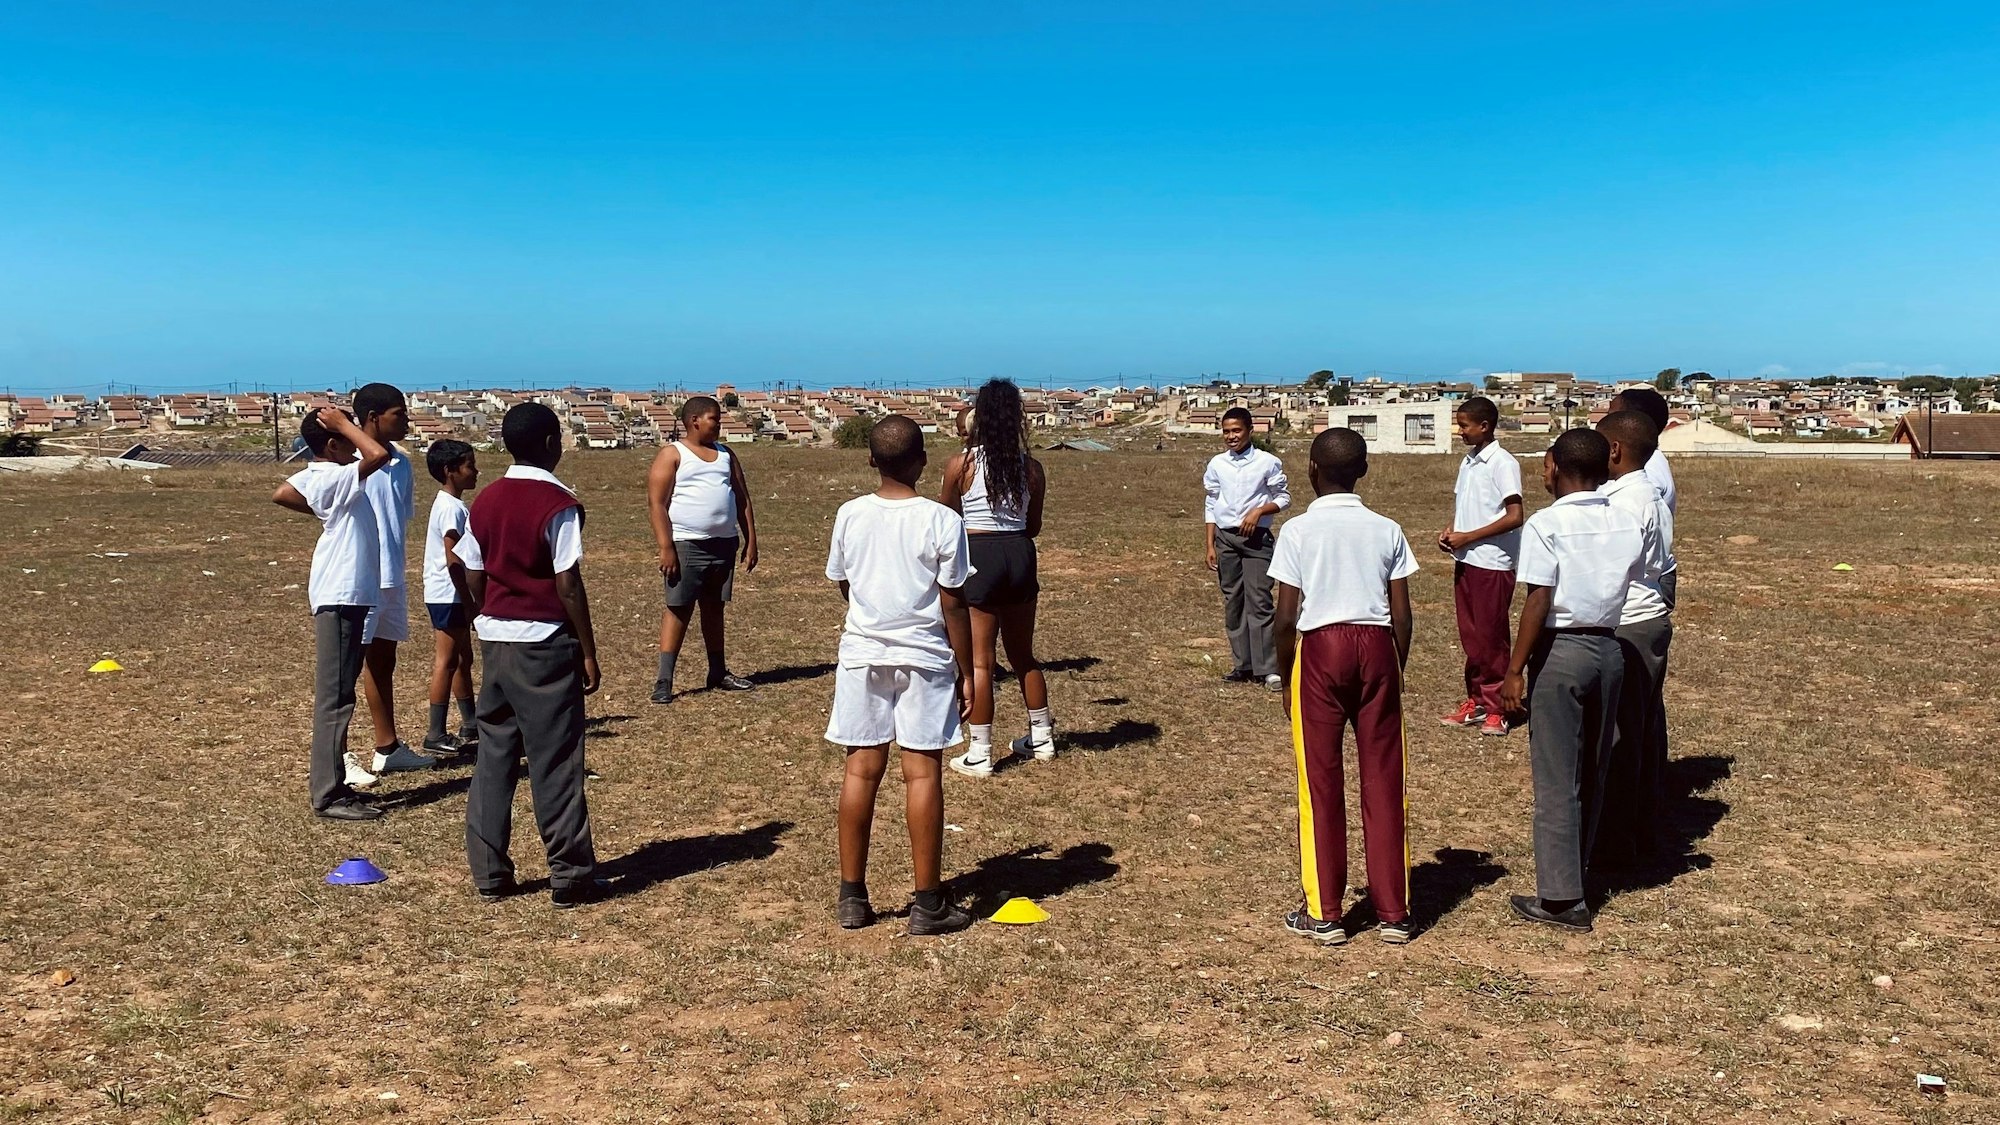 Eine Gruppe von Schülern steht auf dem Gelände einer südafrikanischen Schule im Kreis und umringt eine Freiwillige, die Rugby-Übungen anleitet.